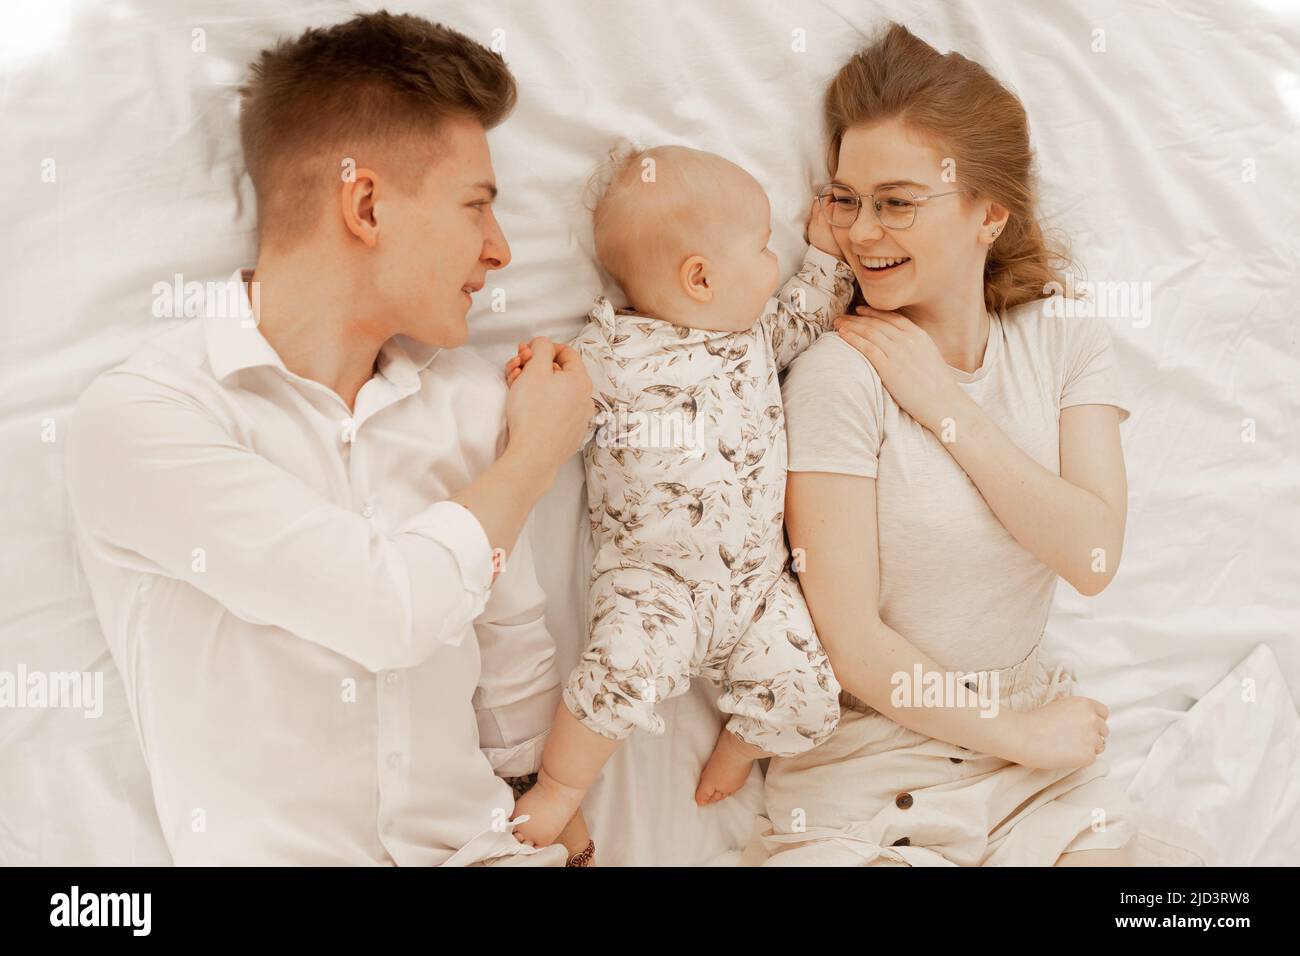 La jeune mère et le père sont couché avec le petit bébé sur le lit, s'amuser et profiter sur fond blanc. Relation mignon entre parents et enfant en bas âge, gratuit Banque D'Images